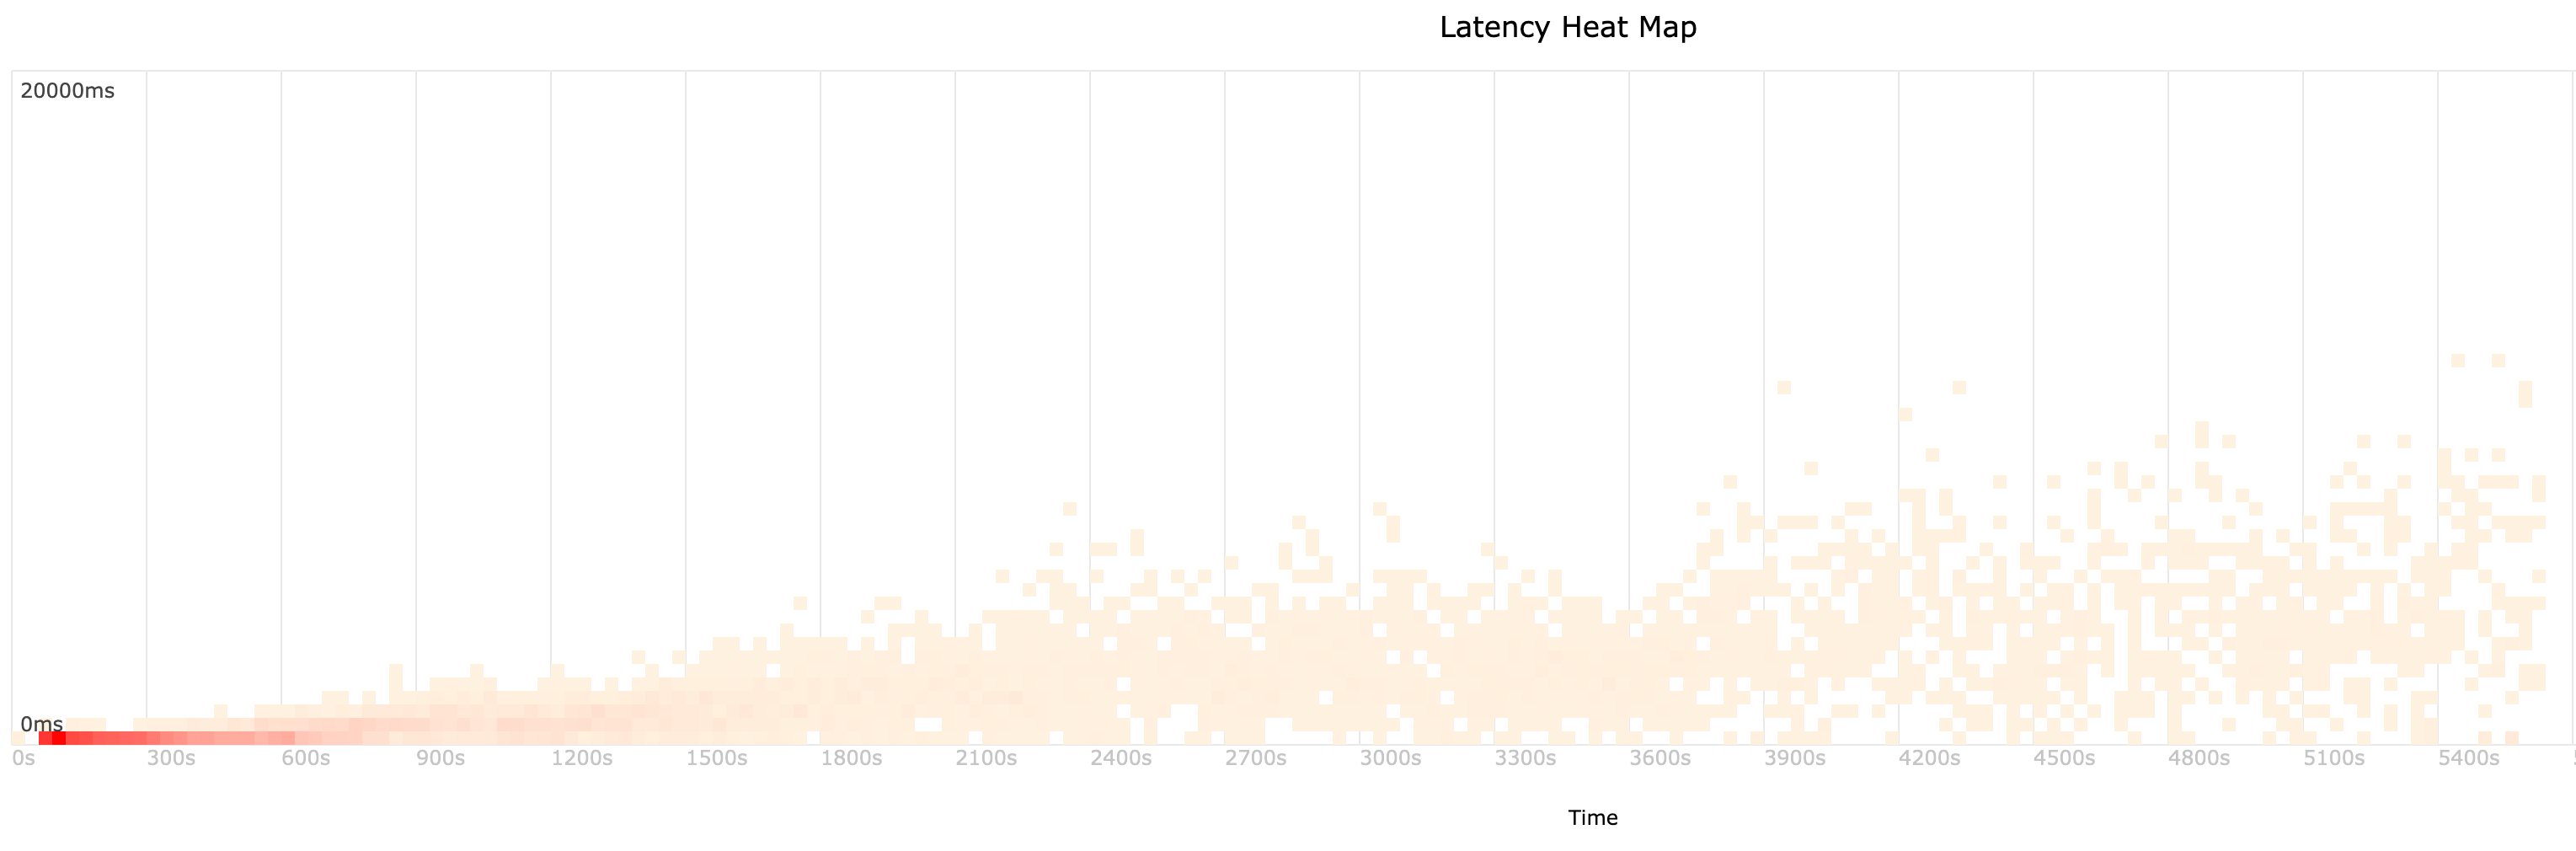 latency heat map